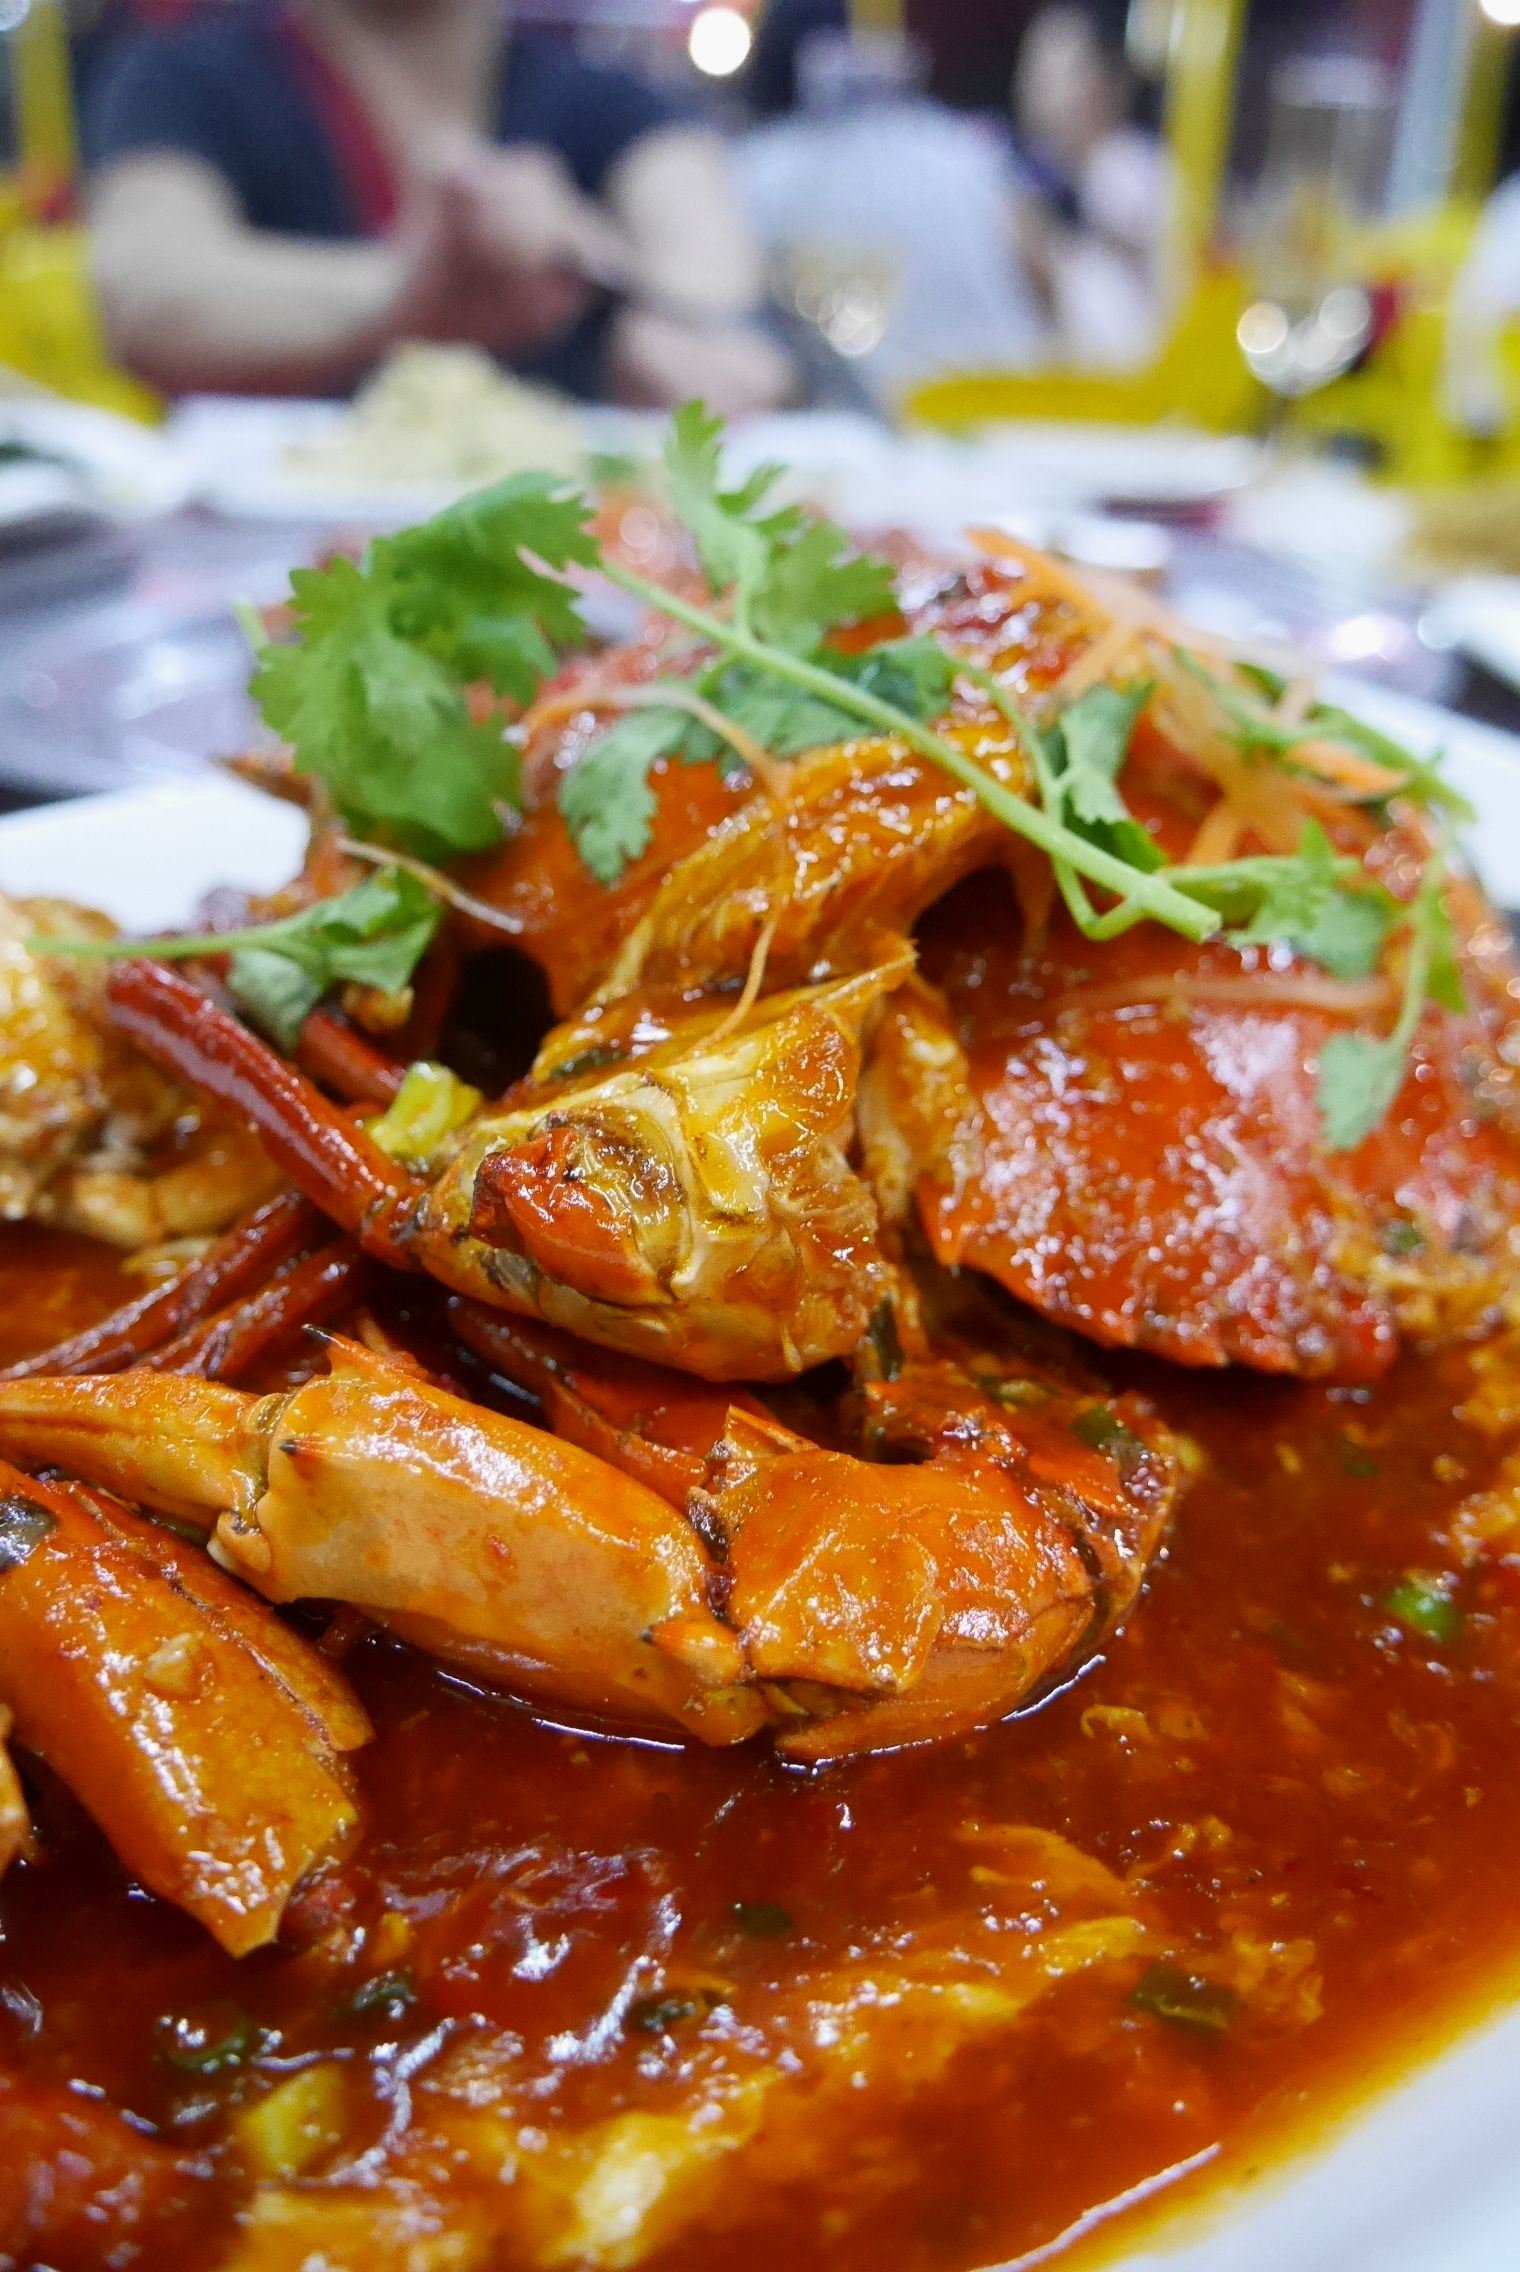 Malaysian style chilli crab